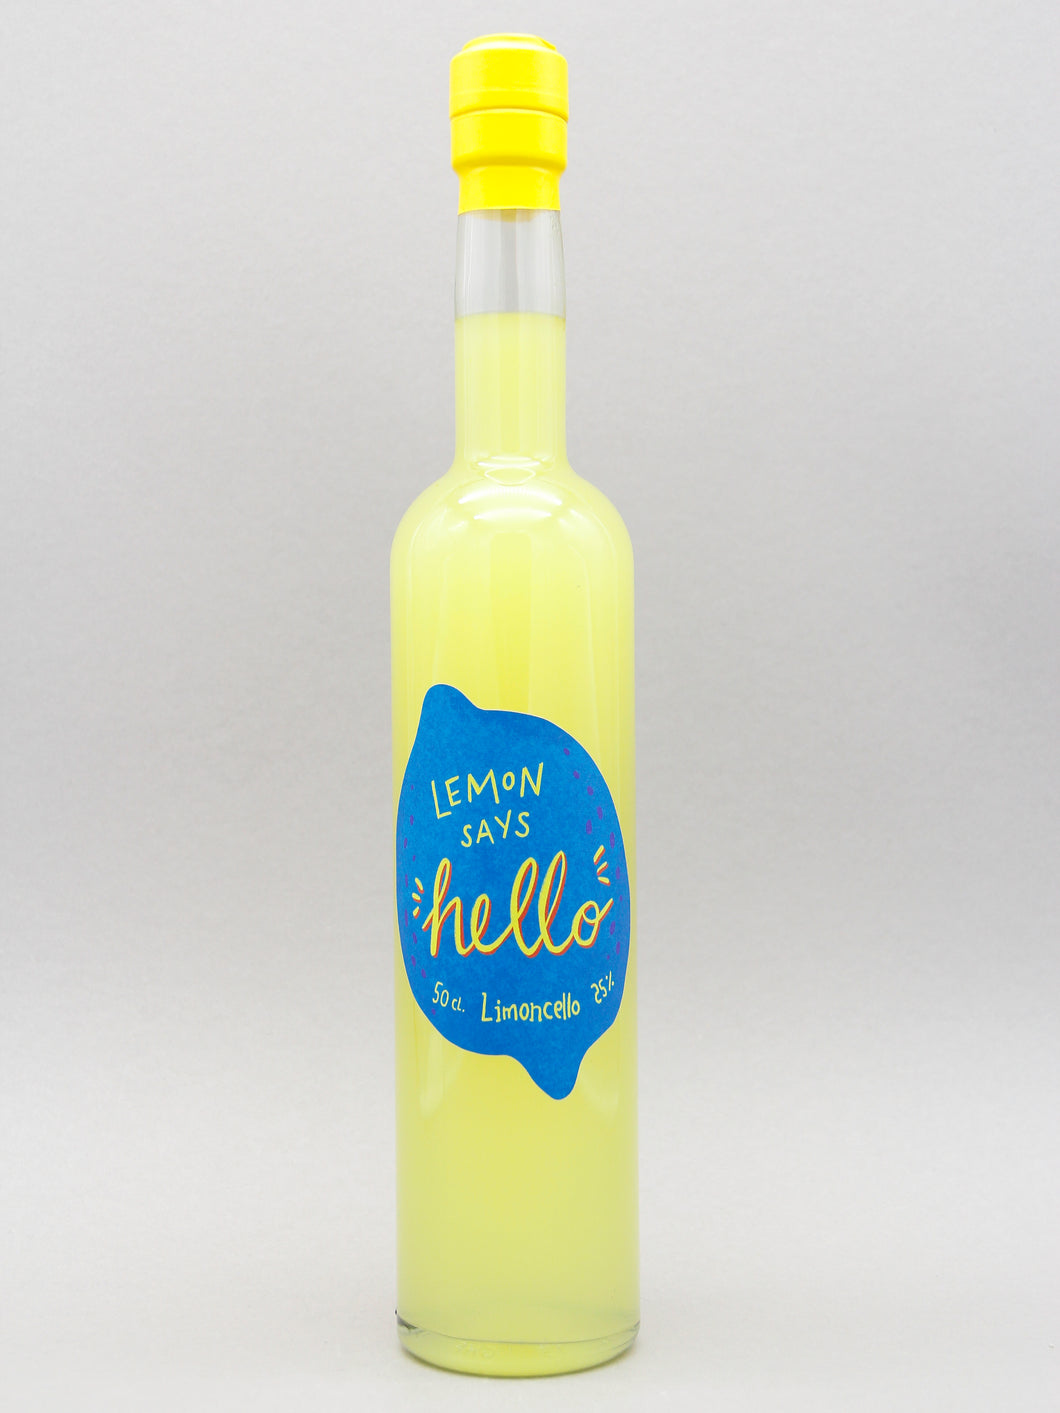 Lemon Says Hello Limoncello, Denmark (30%, 50cl)